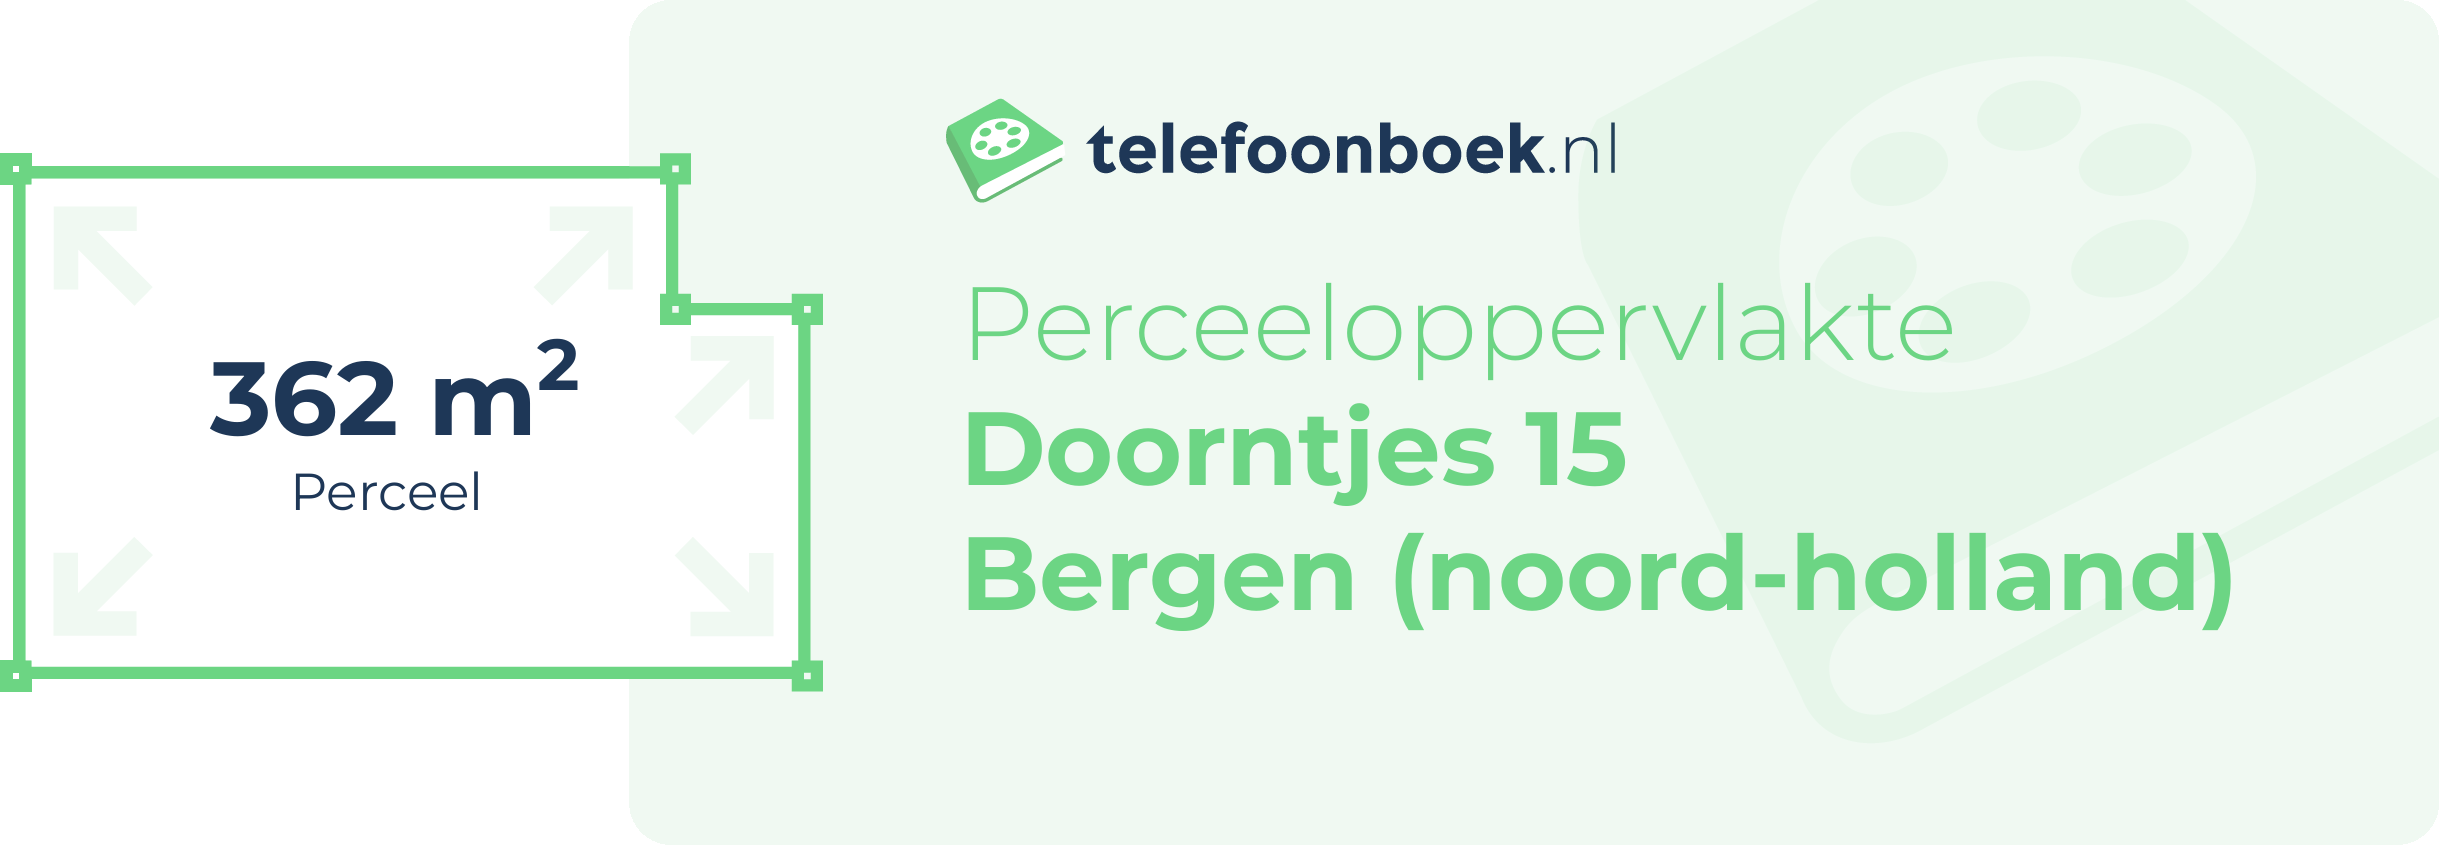 Perceeloppervlakte Doorntjes 15 Bergen (Noord-Holland)